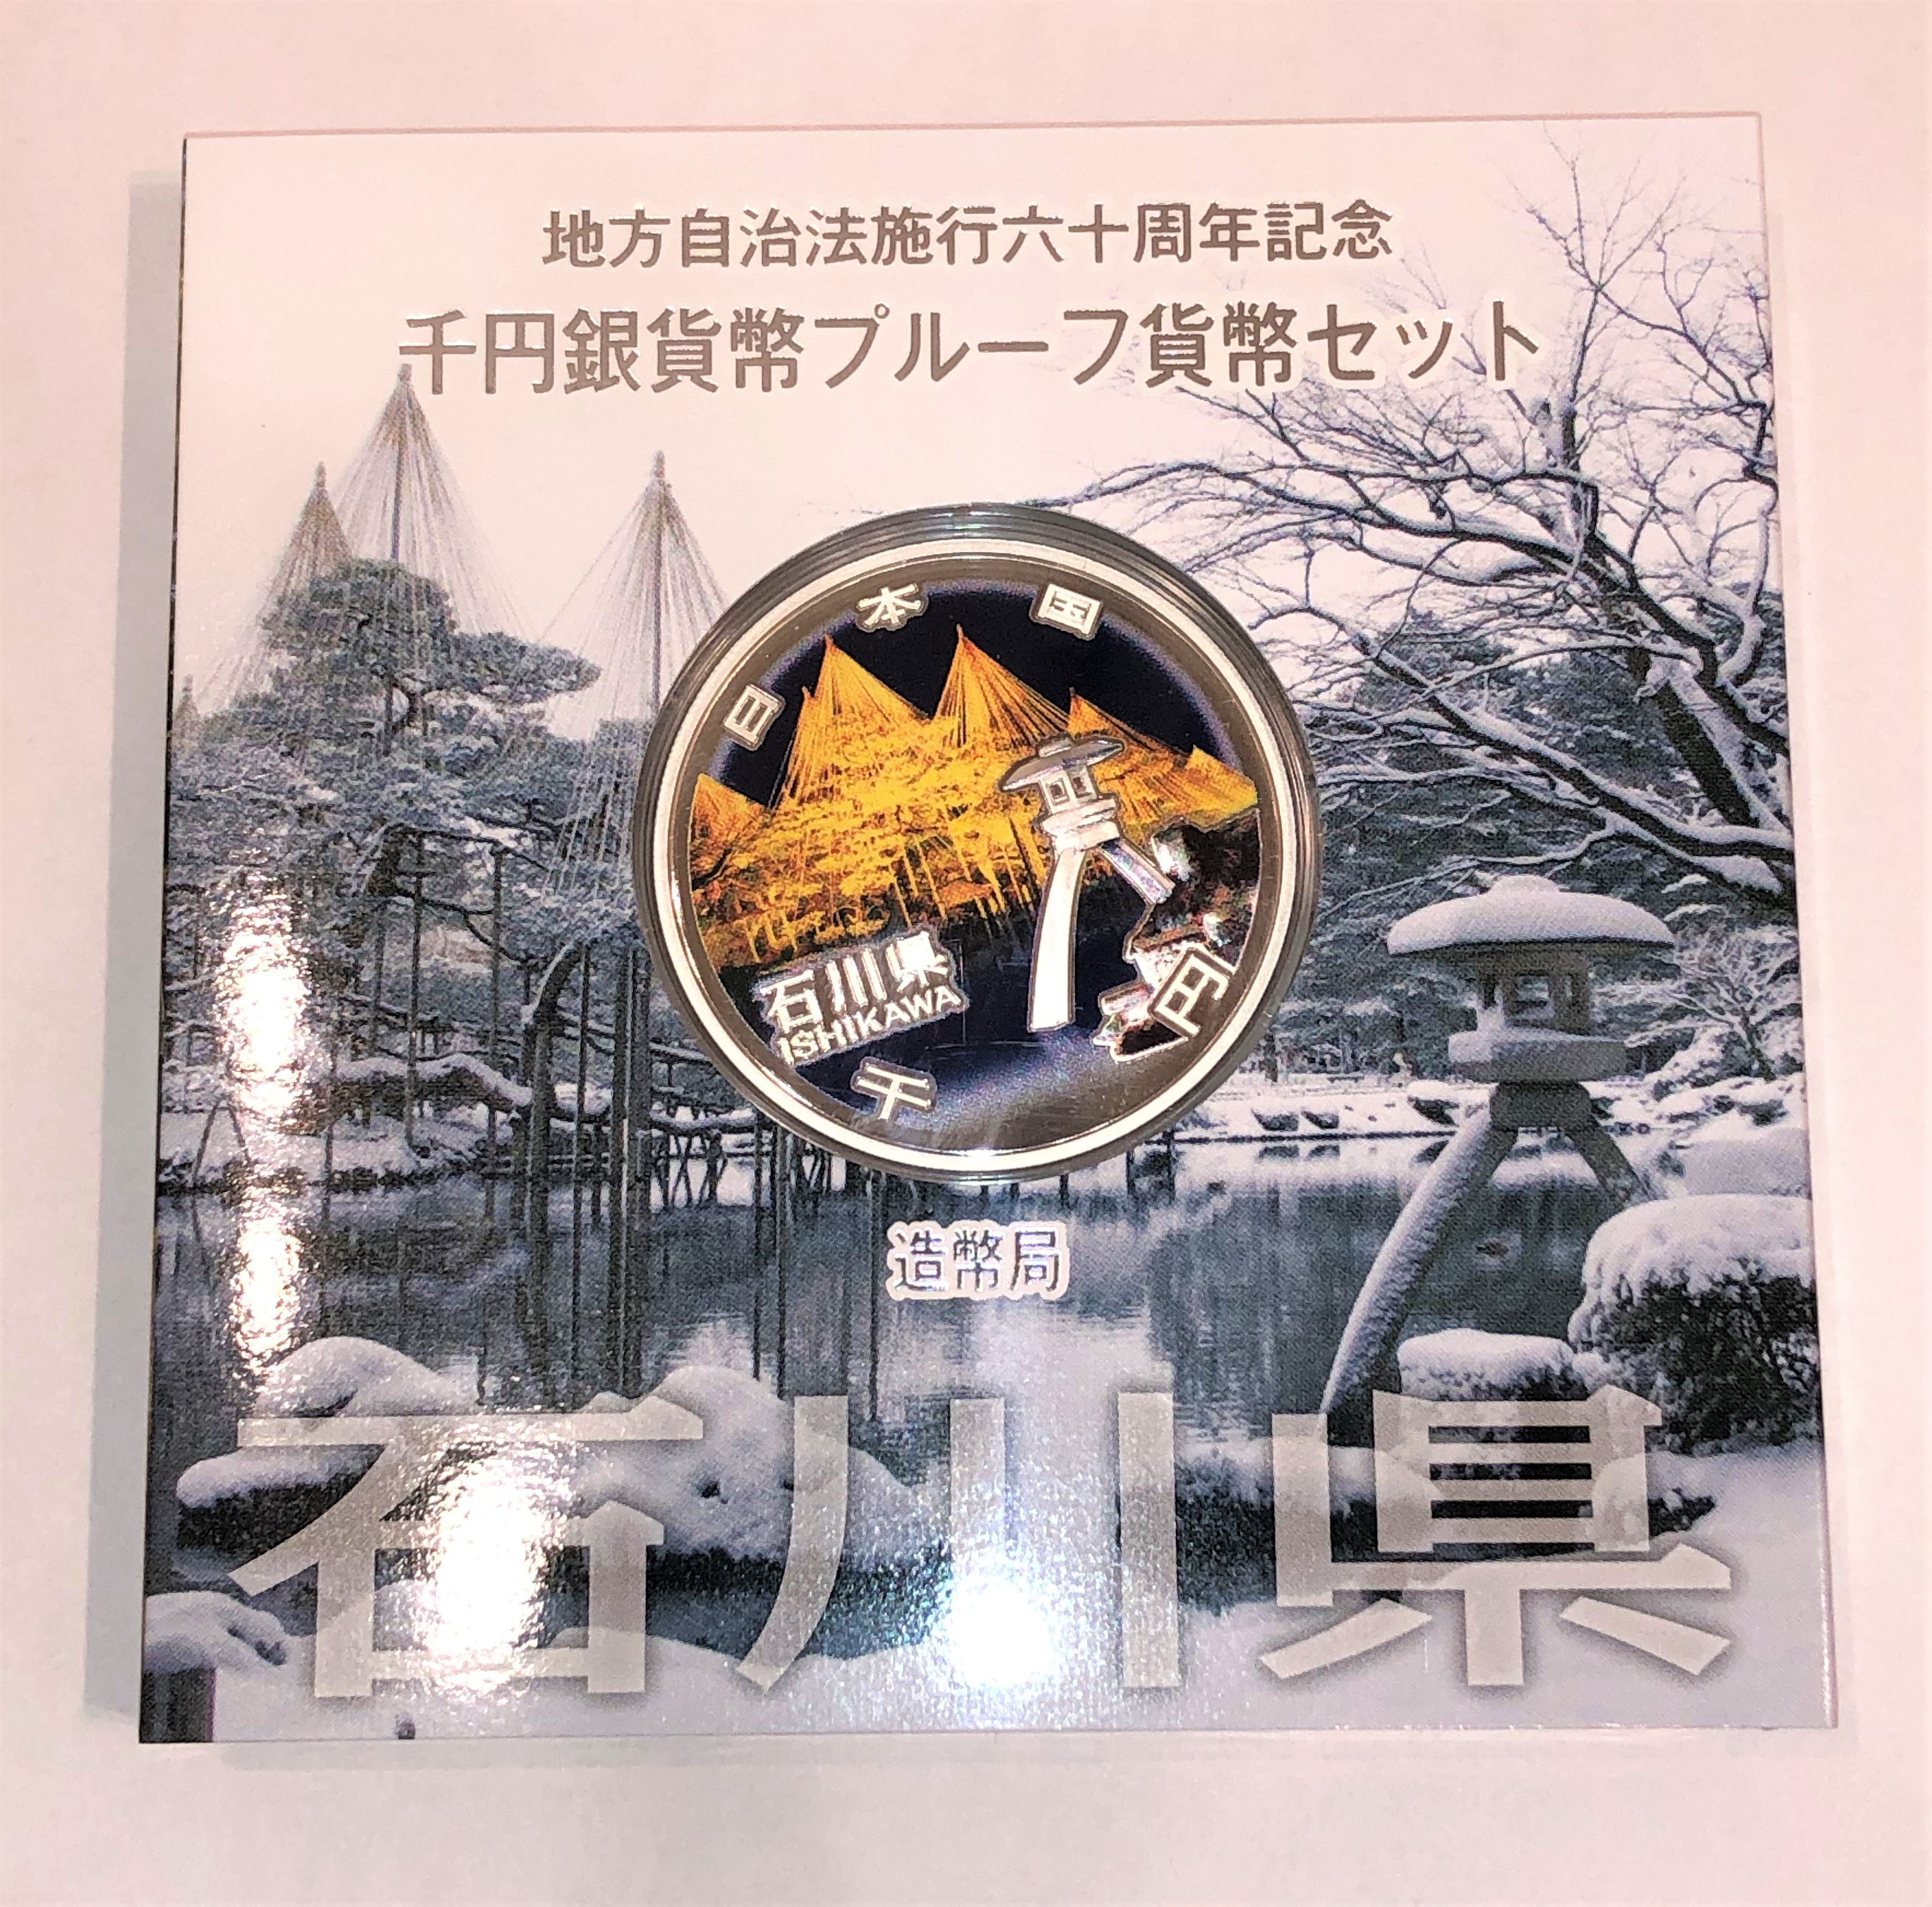 地方自治法施行六十周年記念 千円銀貨幣プルーフセット 石川県